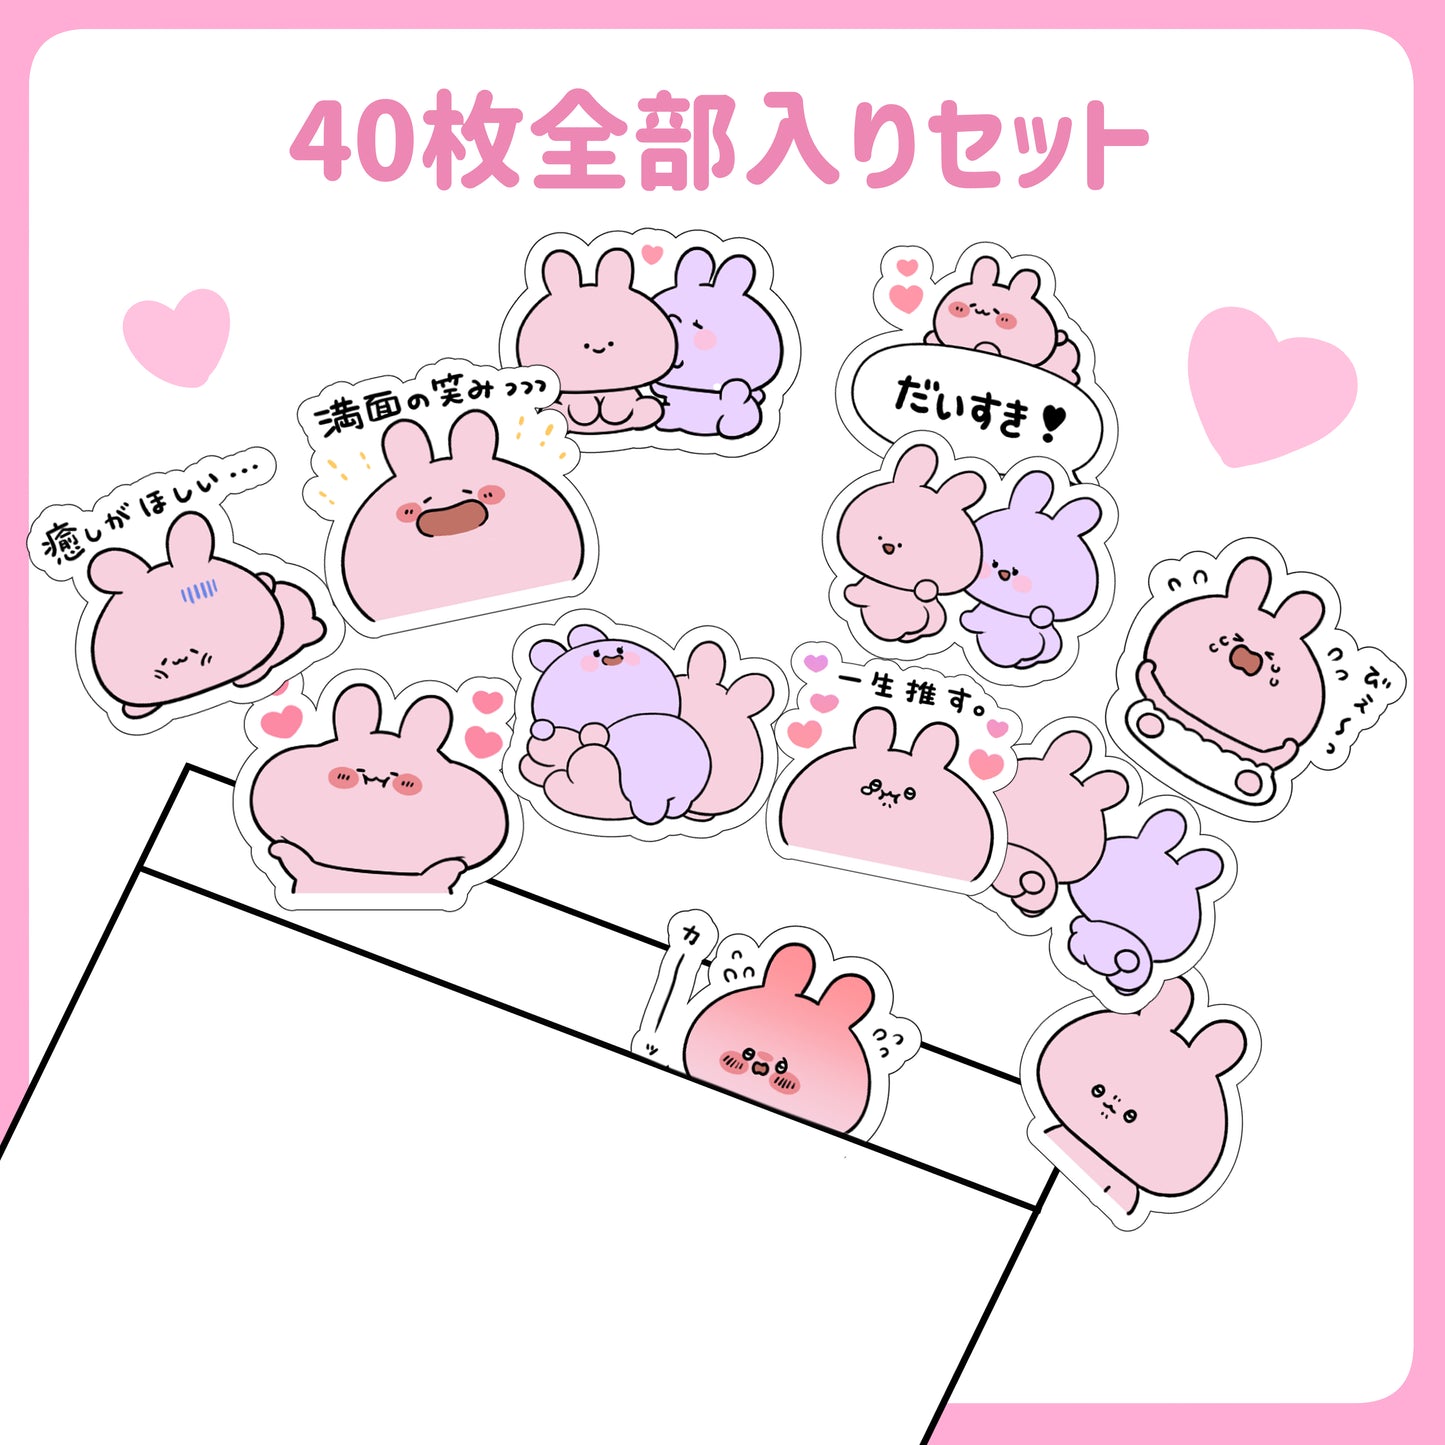 [Asamimi-chan] Enthält alle Spring Butt Flake-Aufkleber (40 Stück)